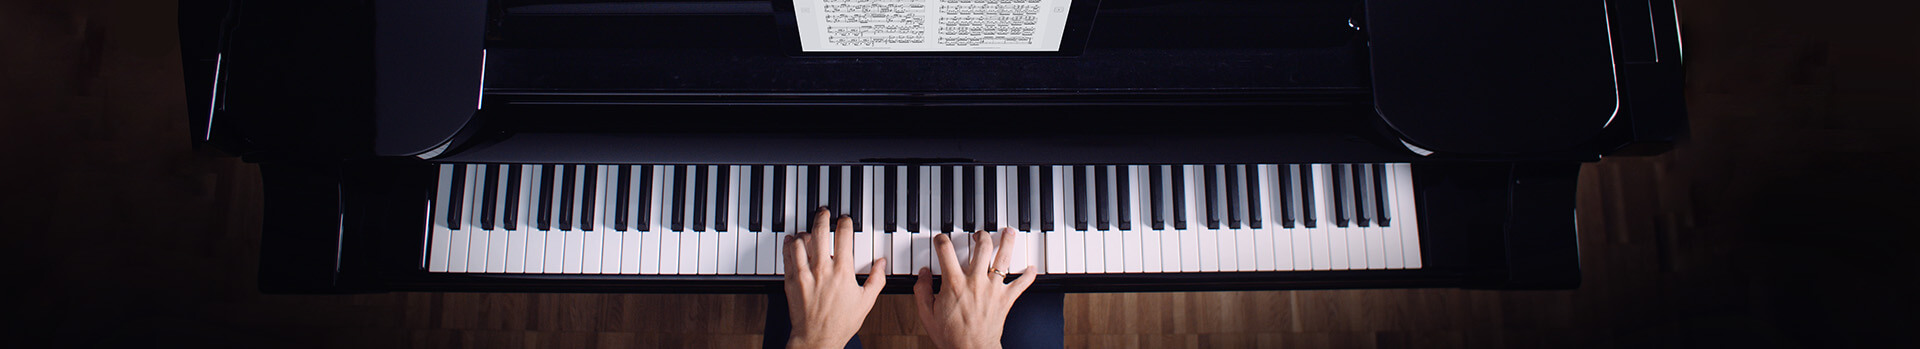 Klavier lernen - mit 88 Tasten eine neue Welt entdecken!